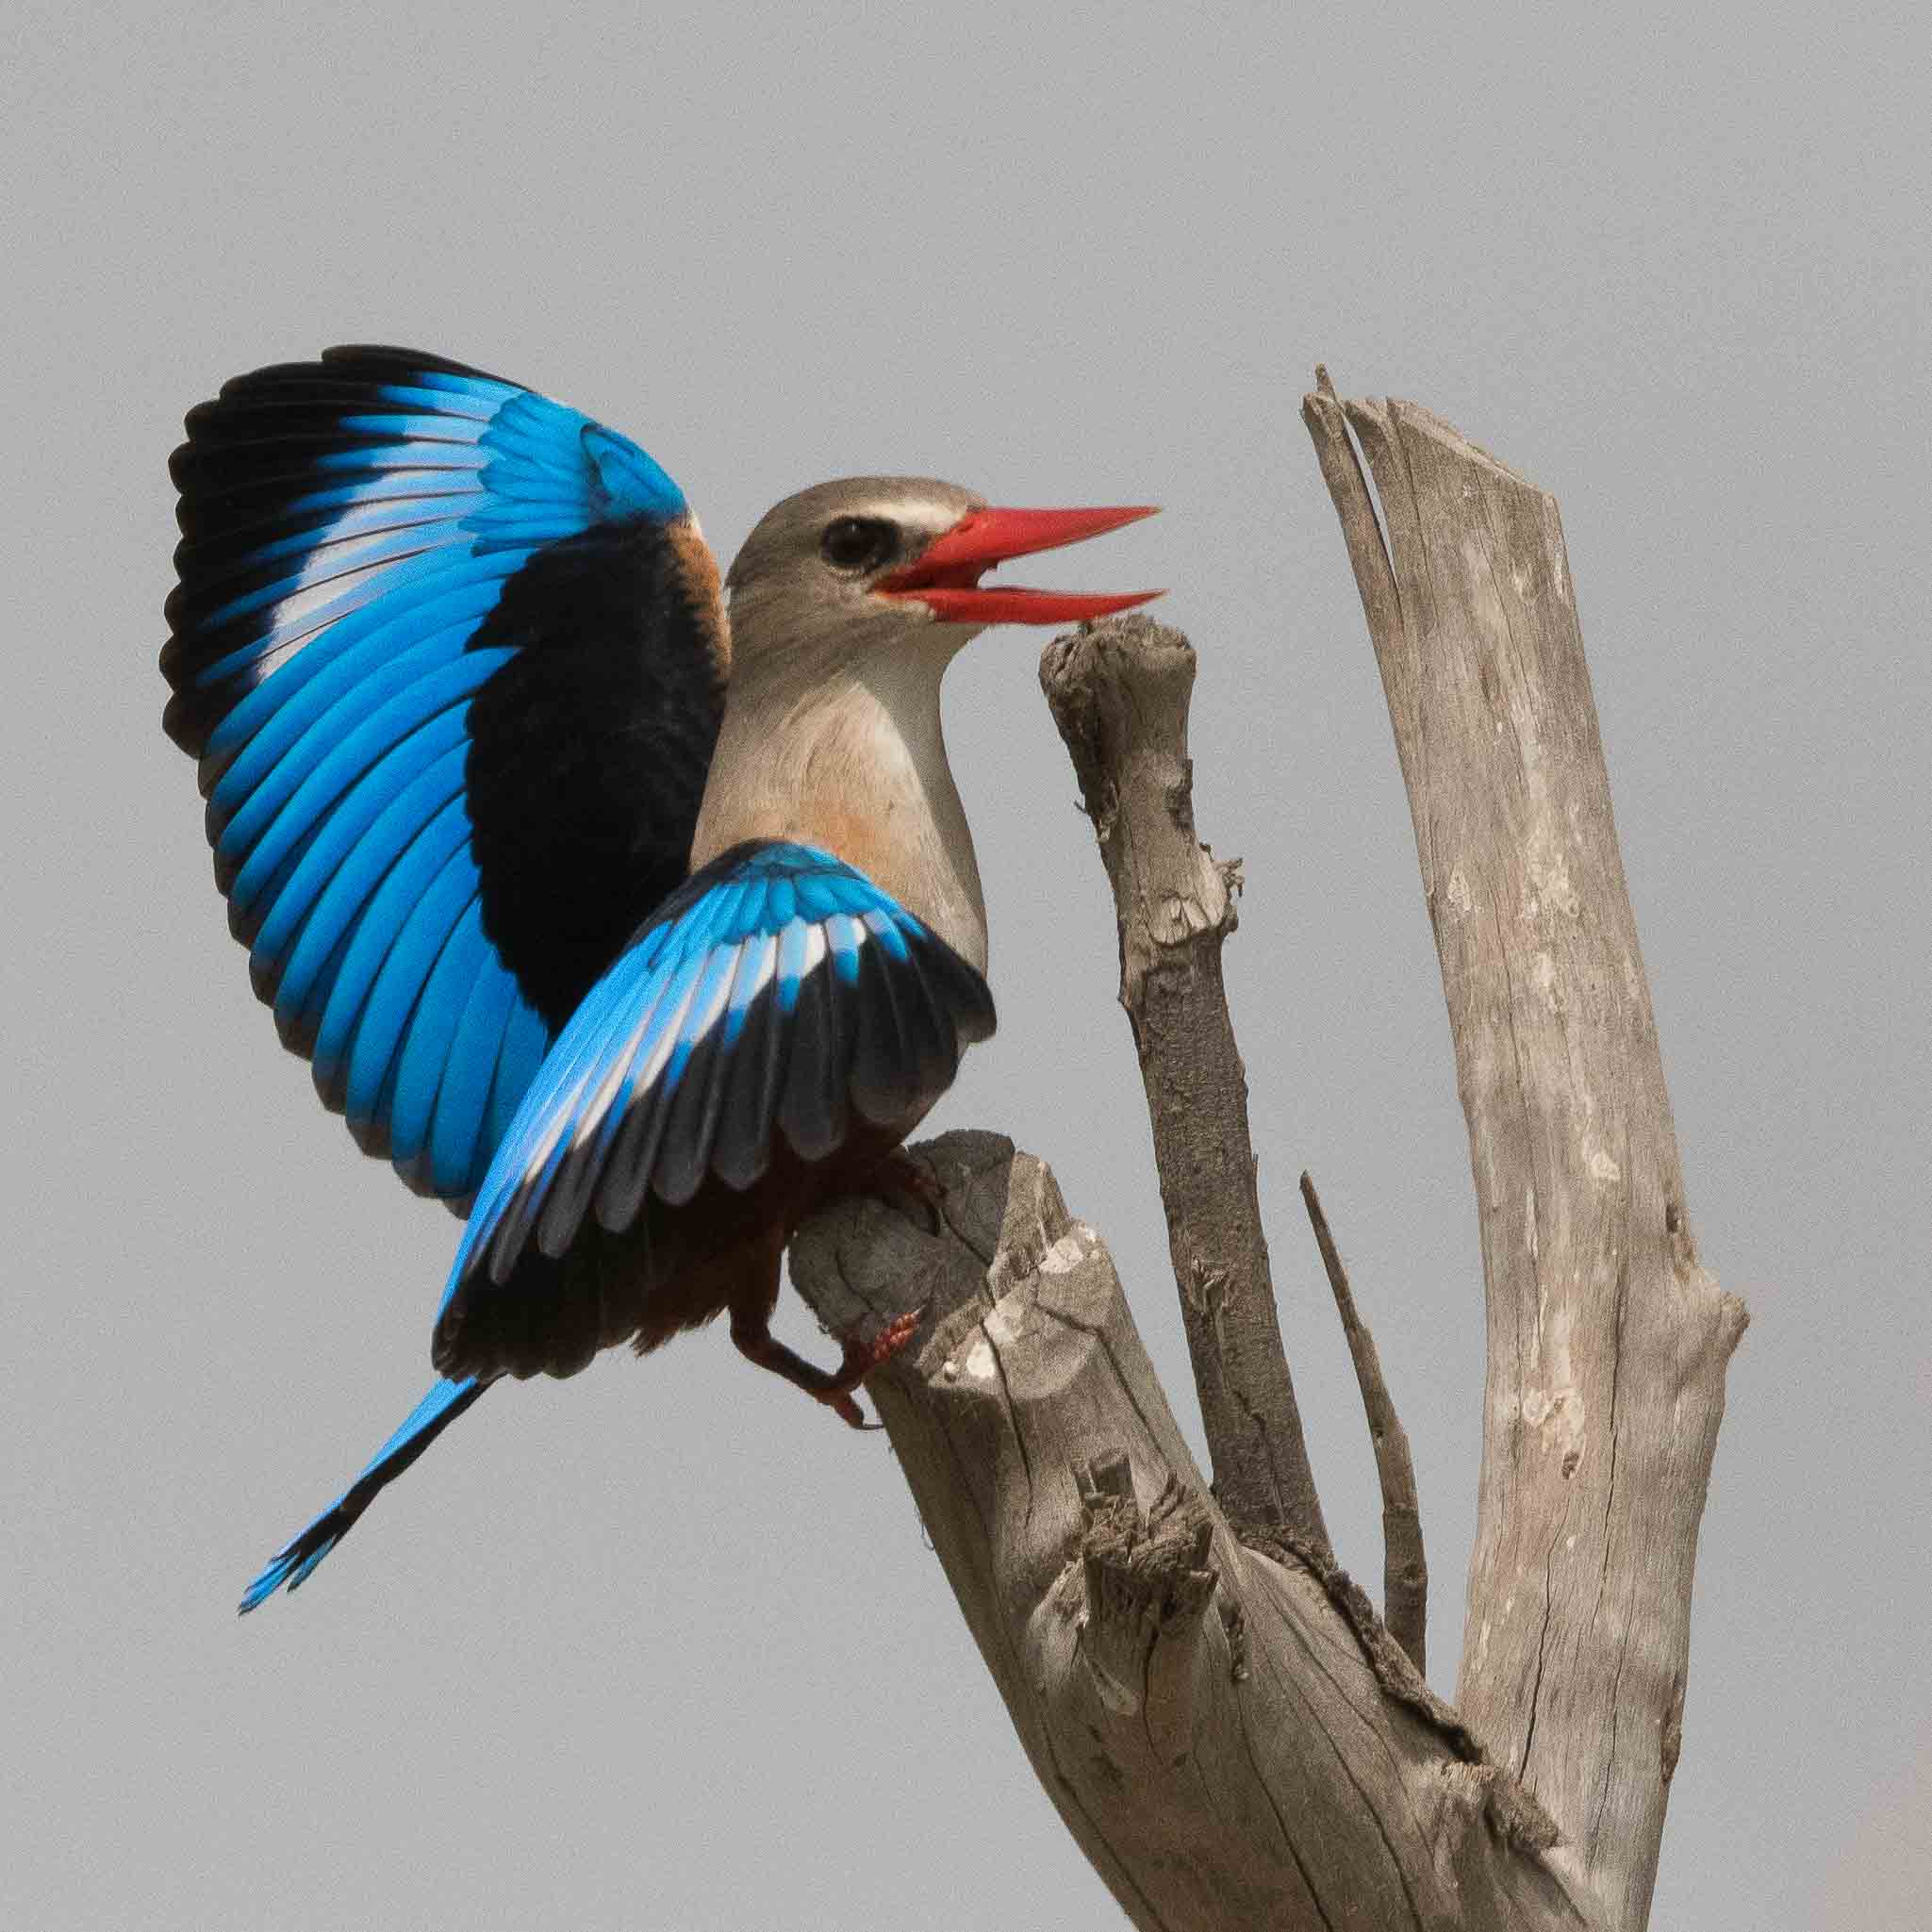 Martin-chasseur à tête grise (Grey-headed kingfisher, Halcyon leucocephala), mâle paradant, Technopôle de Pikine, Dakar, Sénégal;